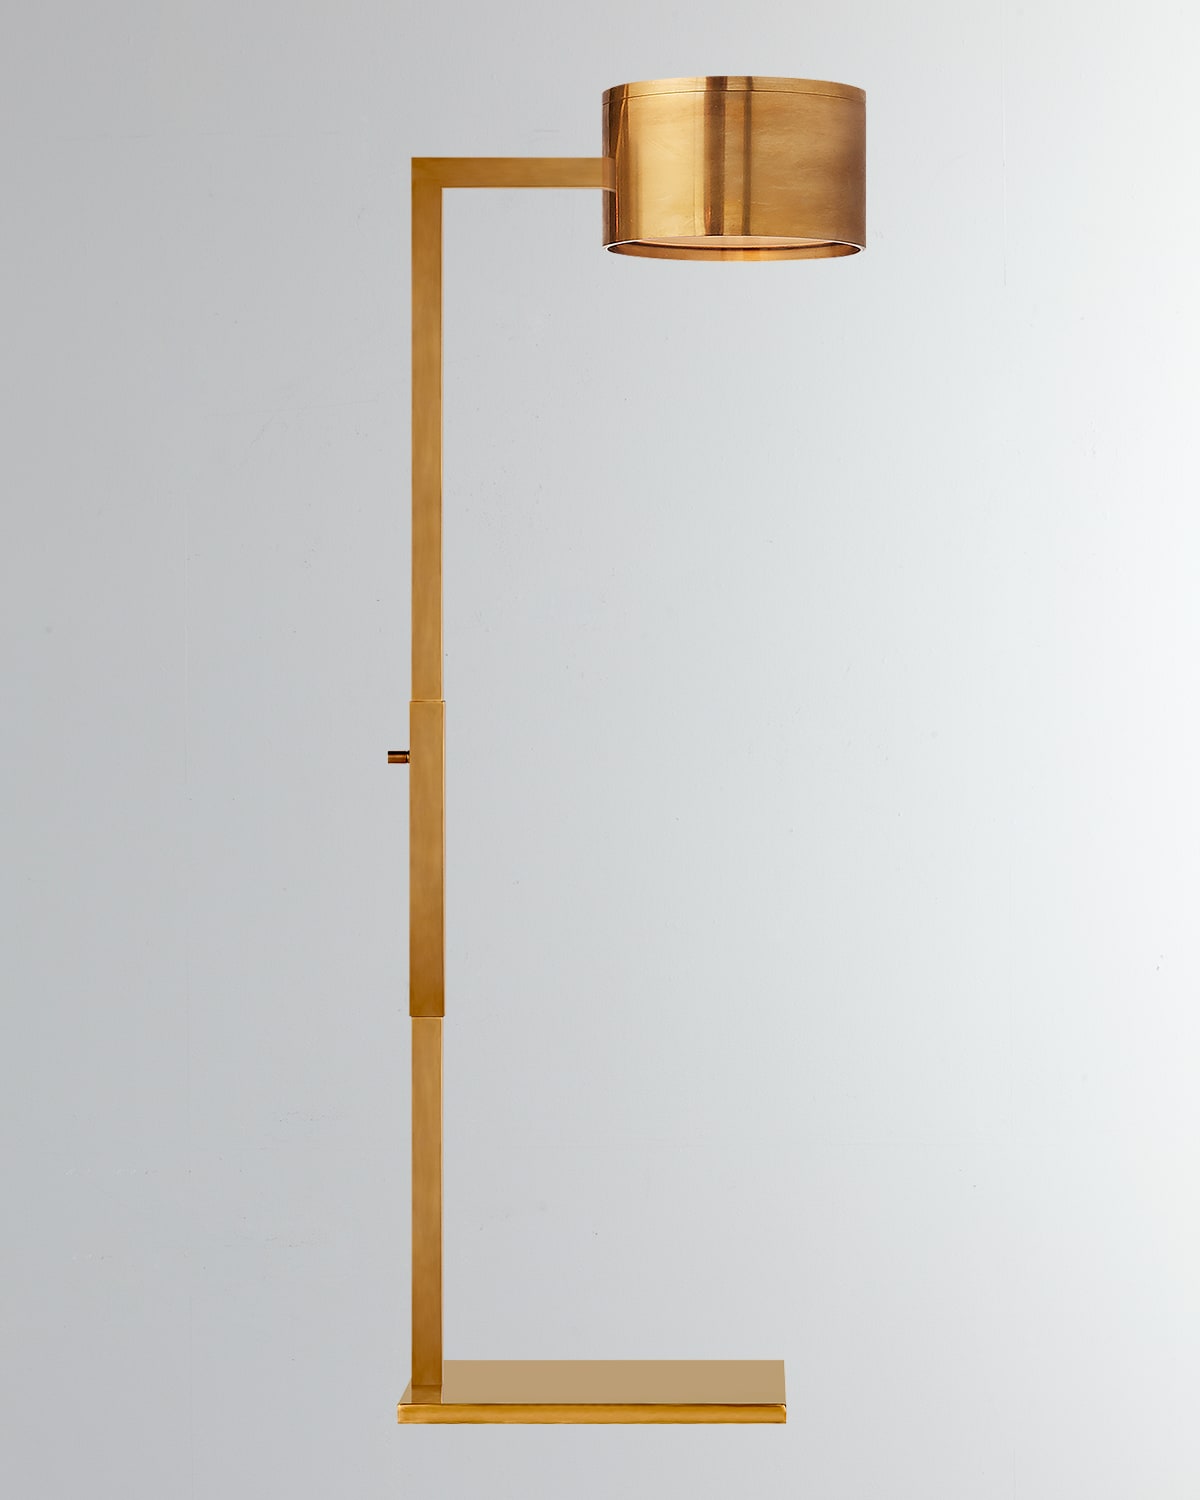 KELLY WEARSTLER LARCHMONT FLOOR LAMP BY KELLY WEARSTLER,PROD216890175